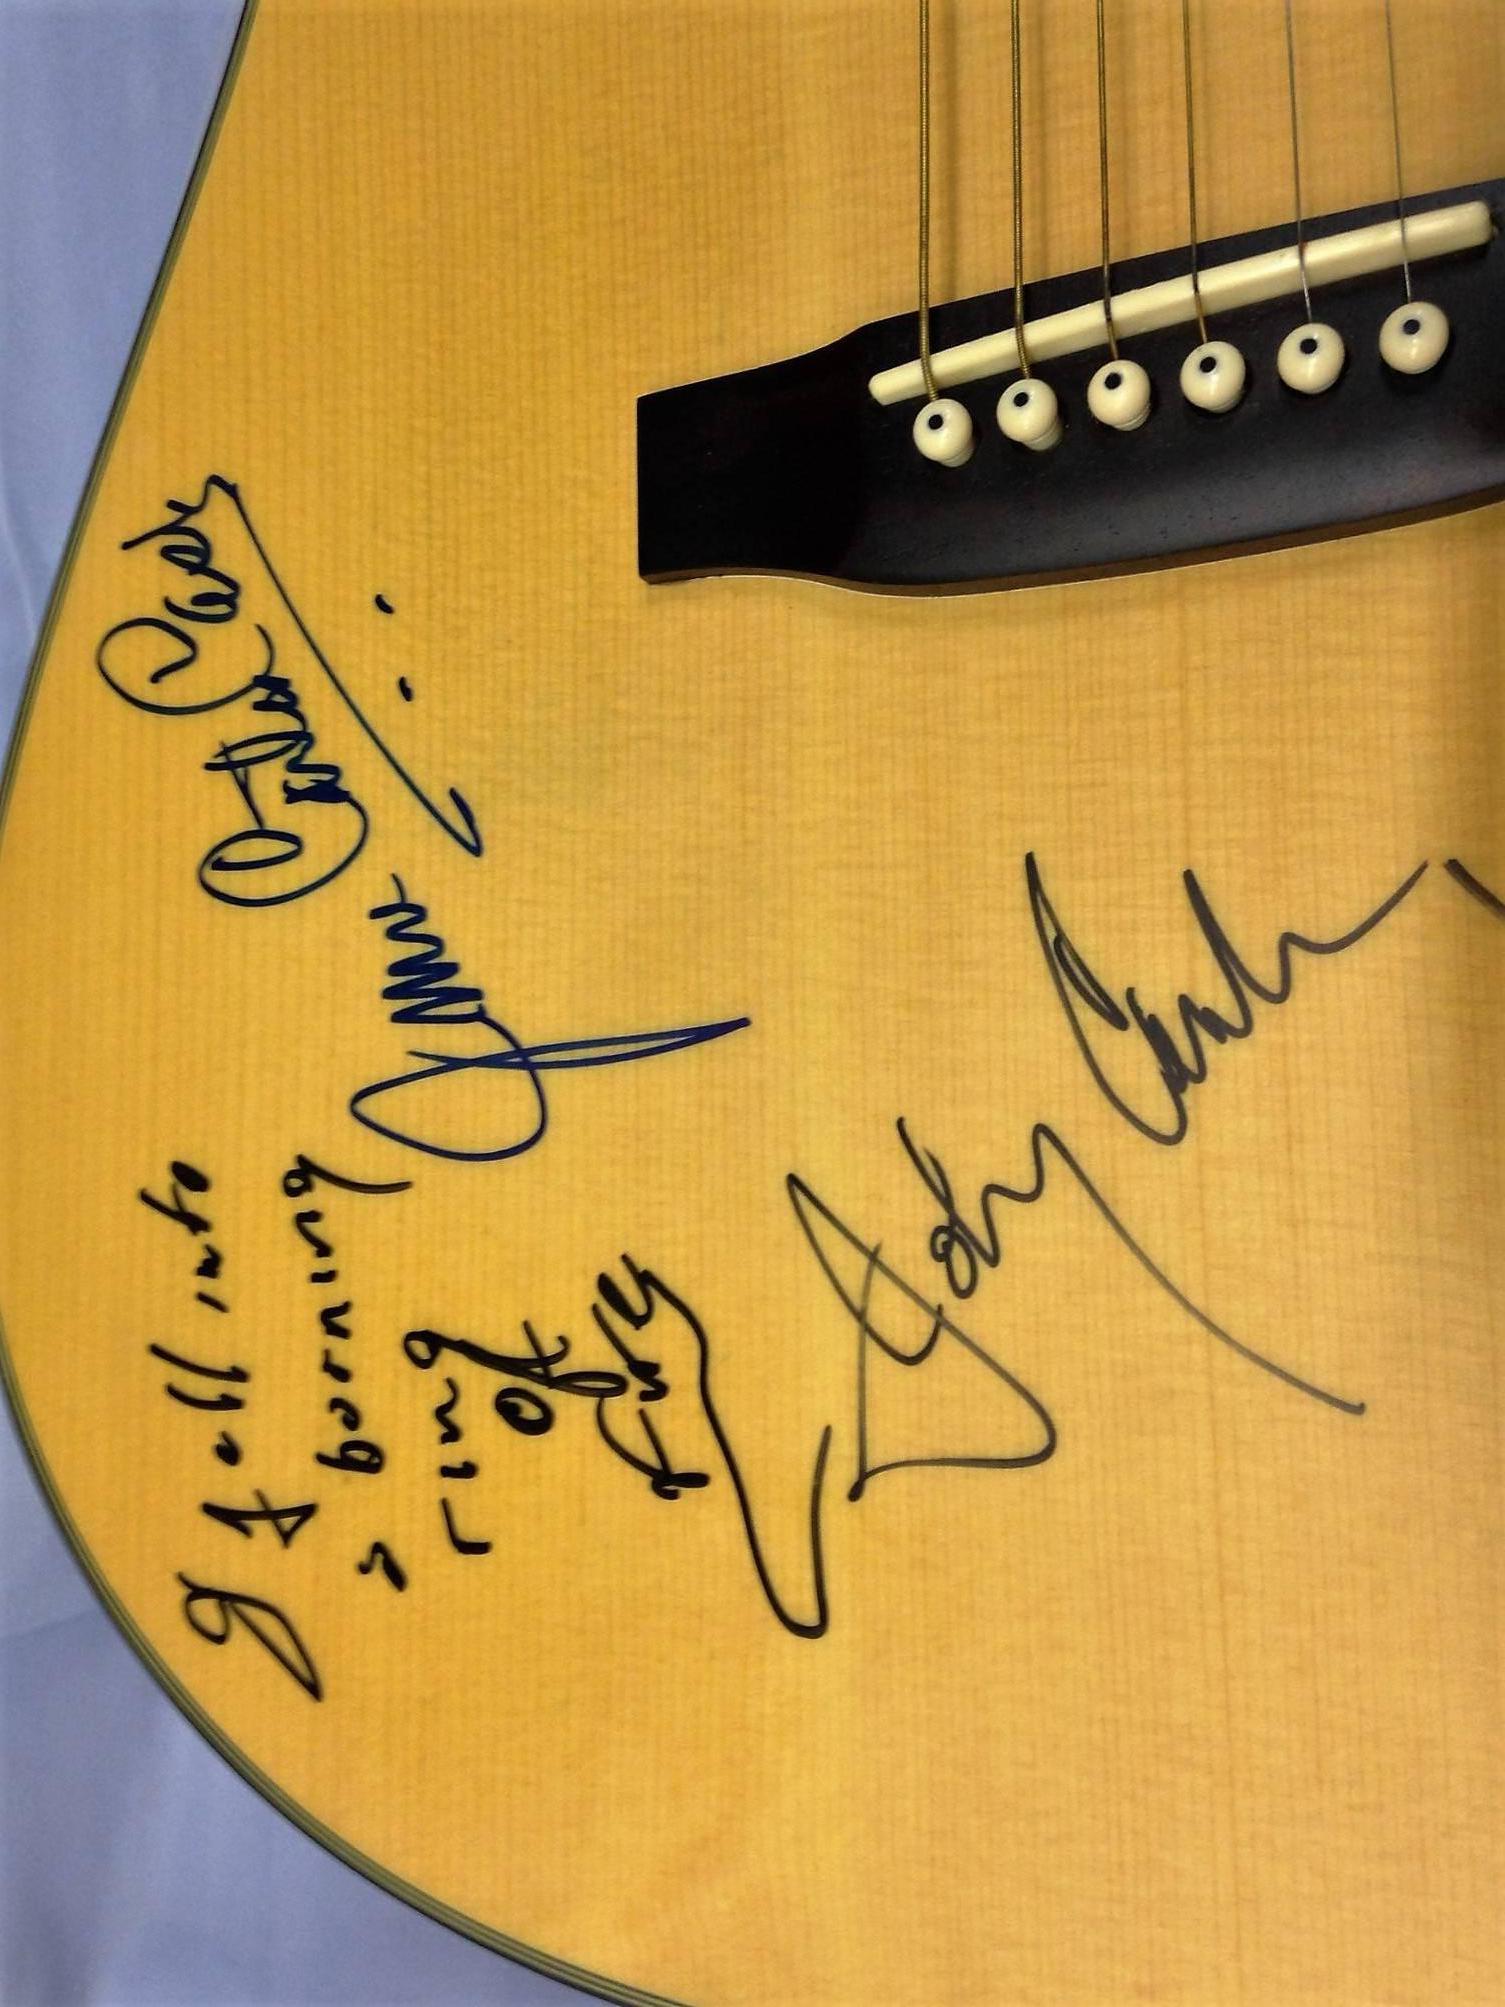 johnny cash autographed guitar